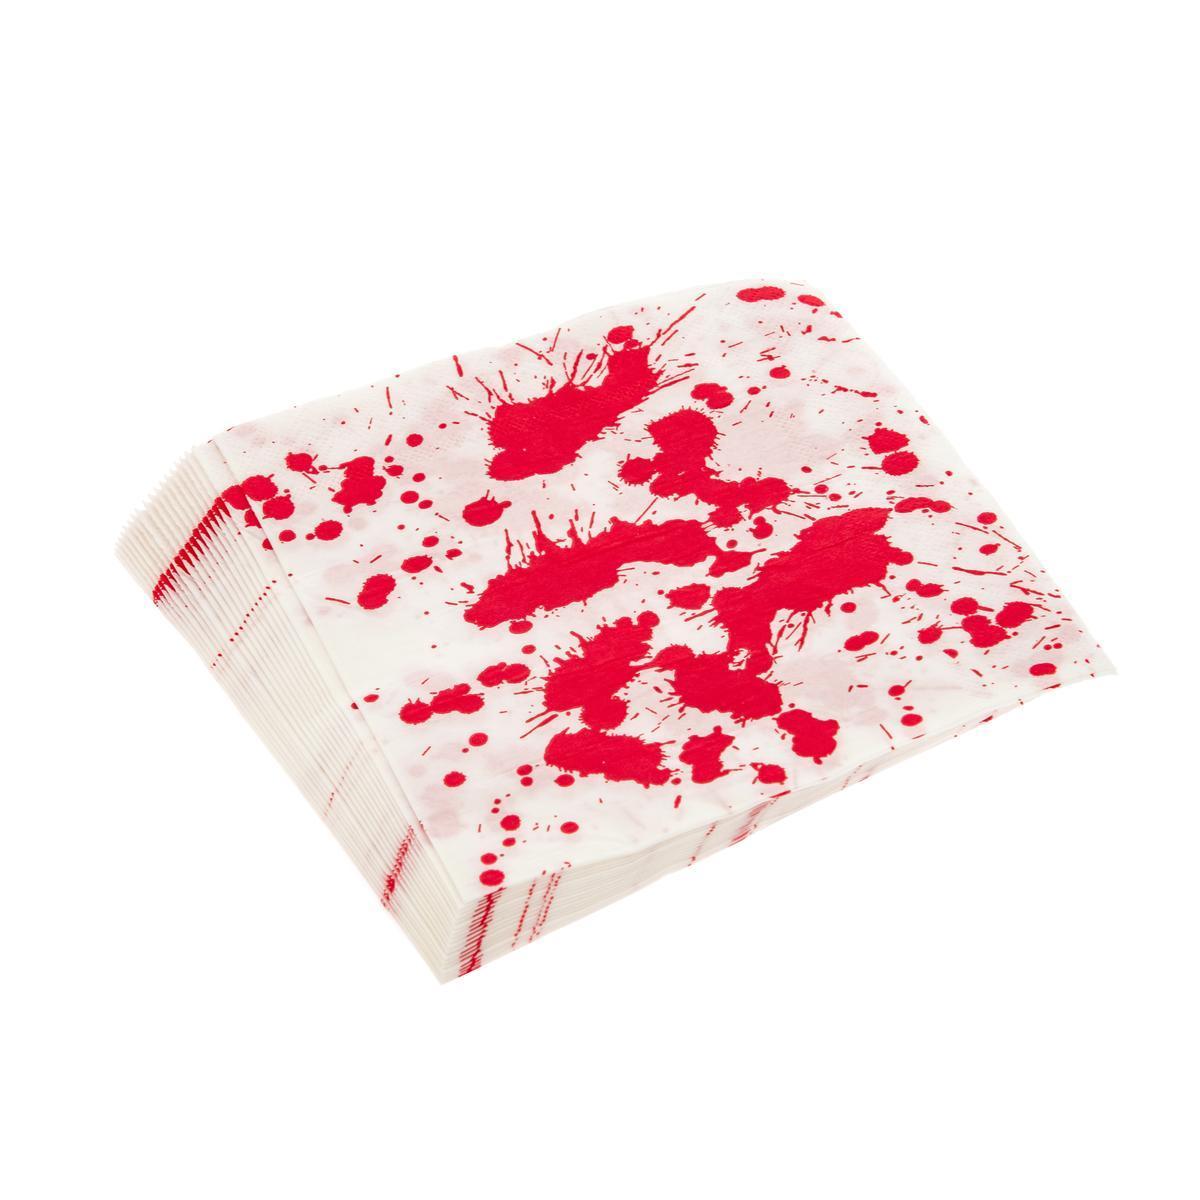 20 serviettes sanglantes - 33 x 33 cm - Rouge, blanc